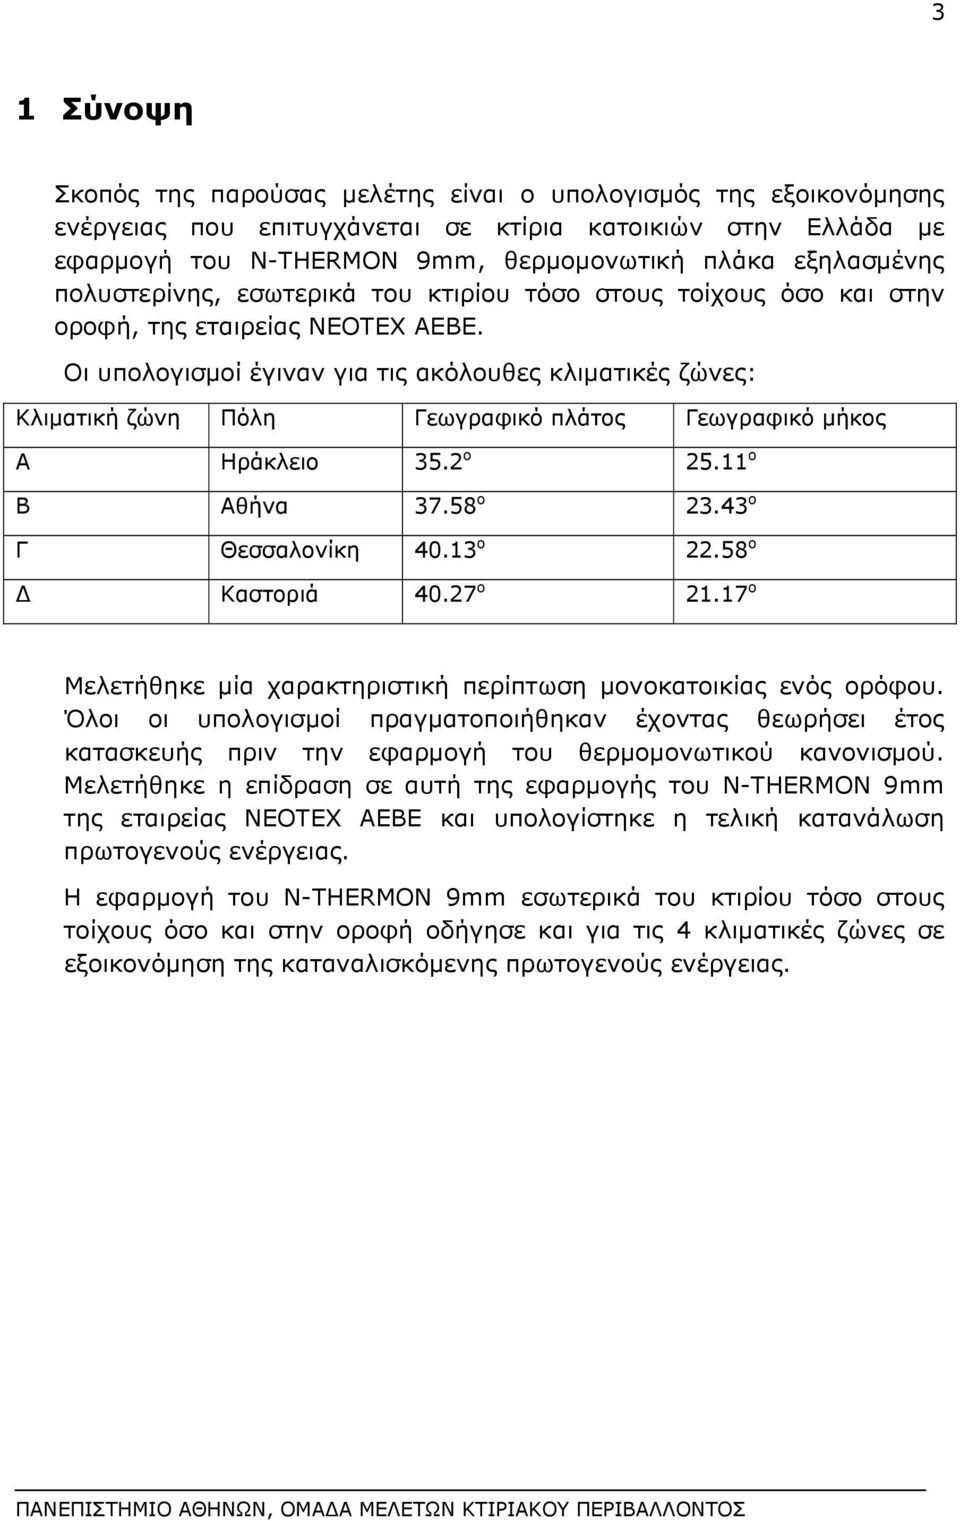 Οι υπολογισμοί έγιναν για τις ακόλουθες κλιματικές ζώνες: Κλιματική ζώνη Πόλη Γεωγραφικό πλάτος Γεωγραφικό μήκος Α Ηράκλειο 35.2 o 25.11 o Β Αθήνα 37.58 o 23.43 o Γ Θεσσαλονίκη 40.13 o 22.